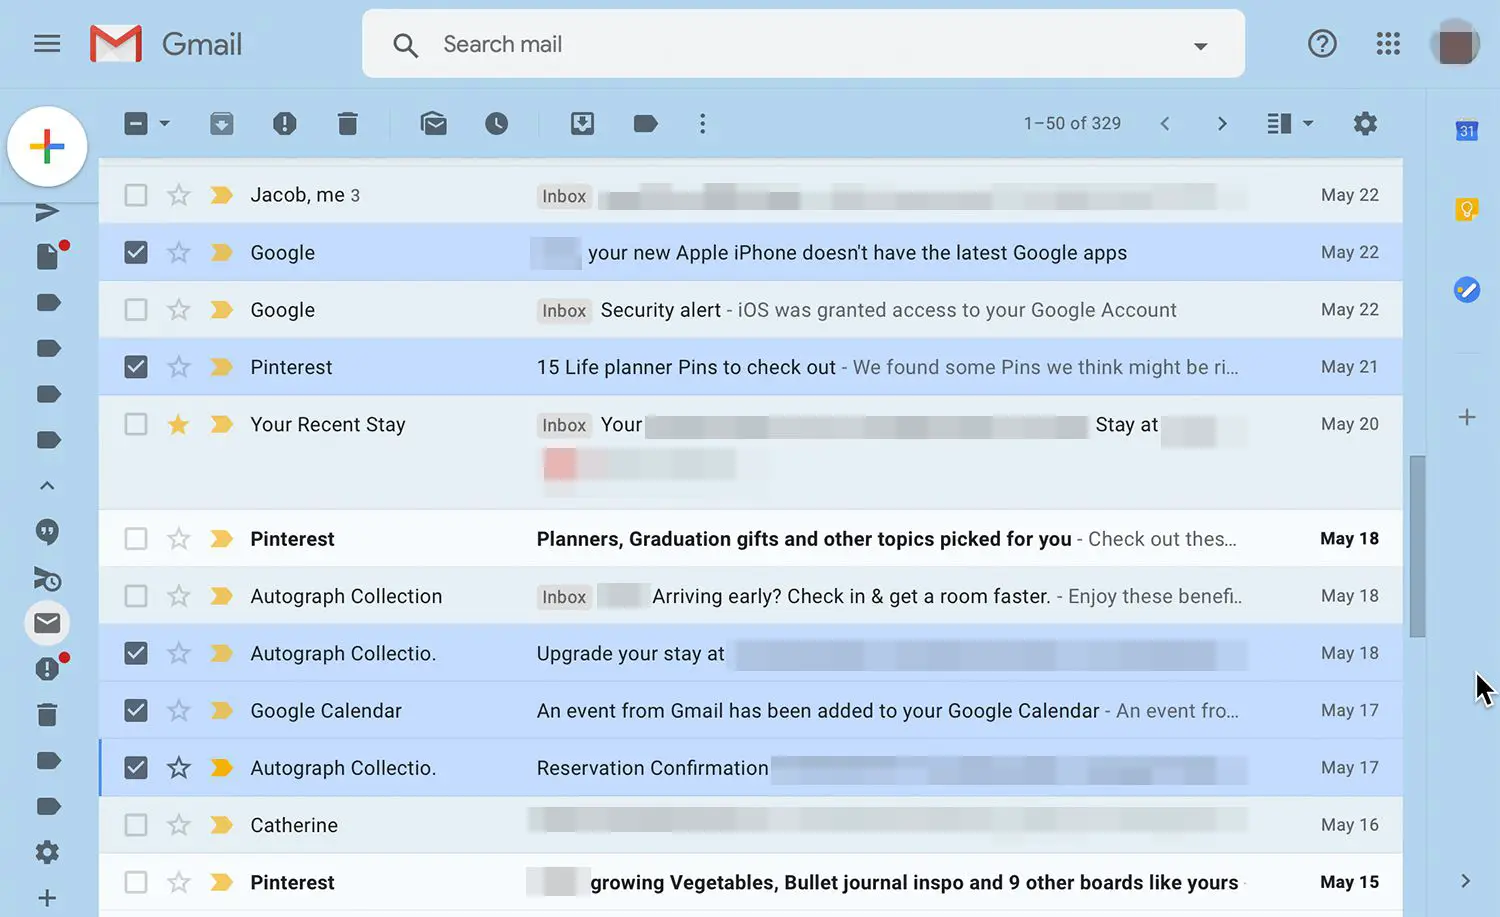 Marque as caixas na frente dos e-mails para retornar à caixa de entrada no Gmail